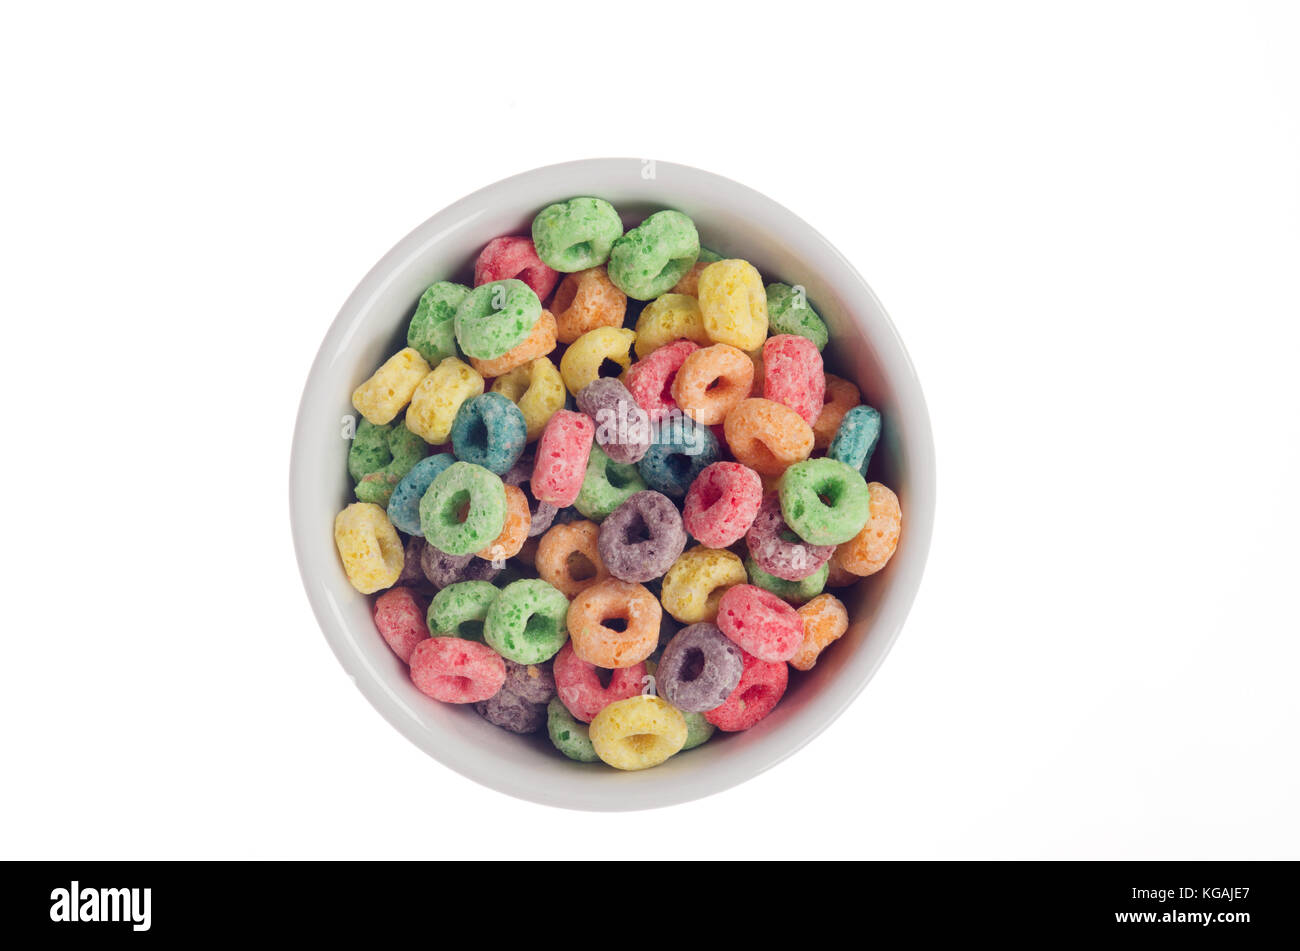 Schüssel von Kellogg's Froot Loops cereal von oben auf weißem Hintergrund  Stockfotografie - Alamy